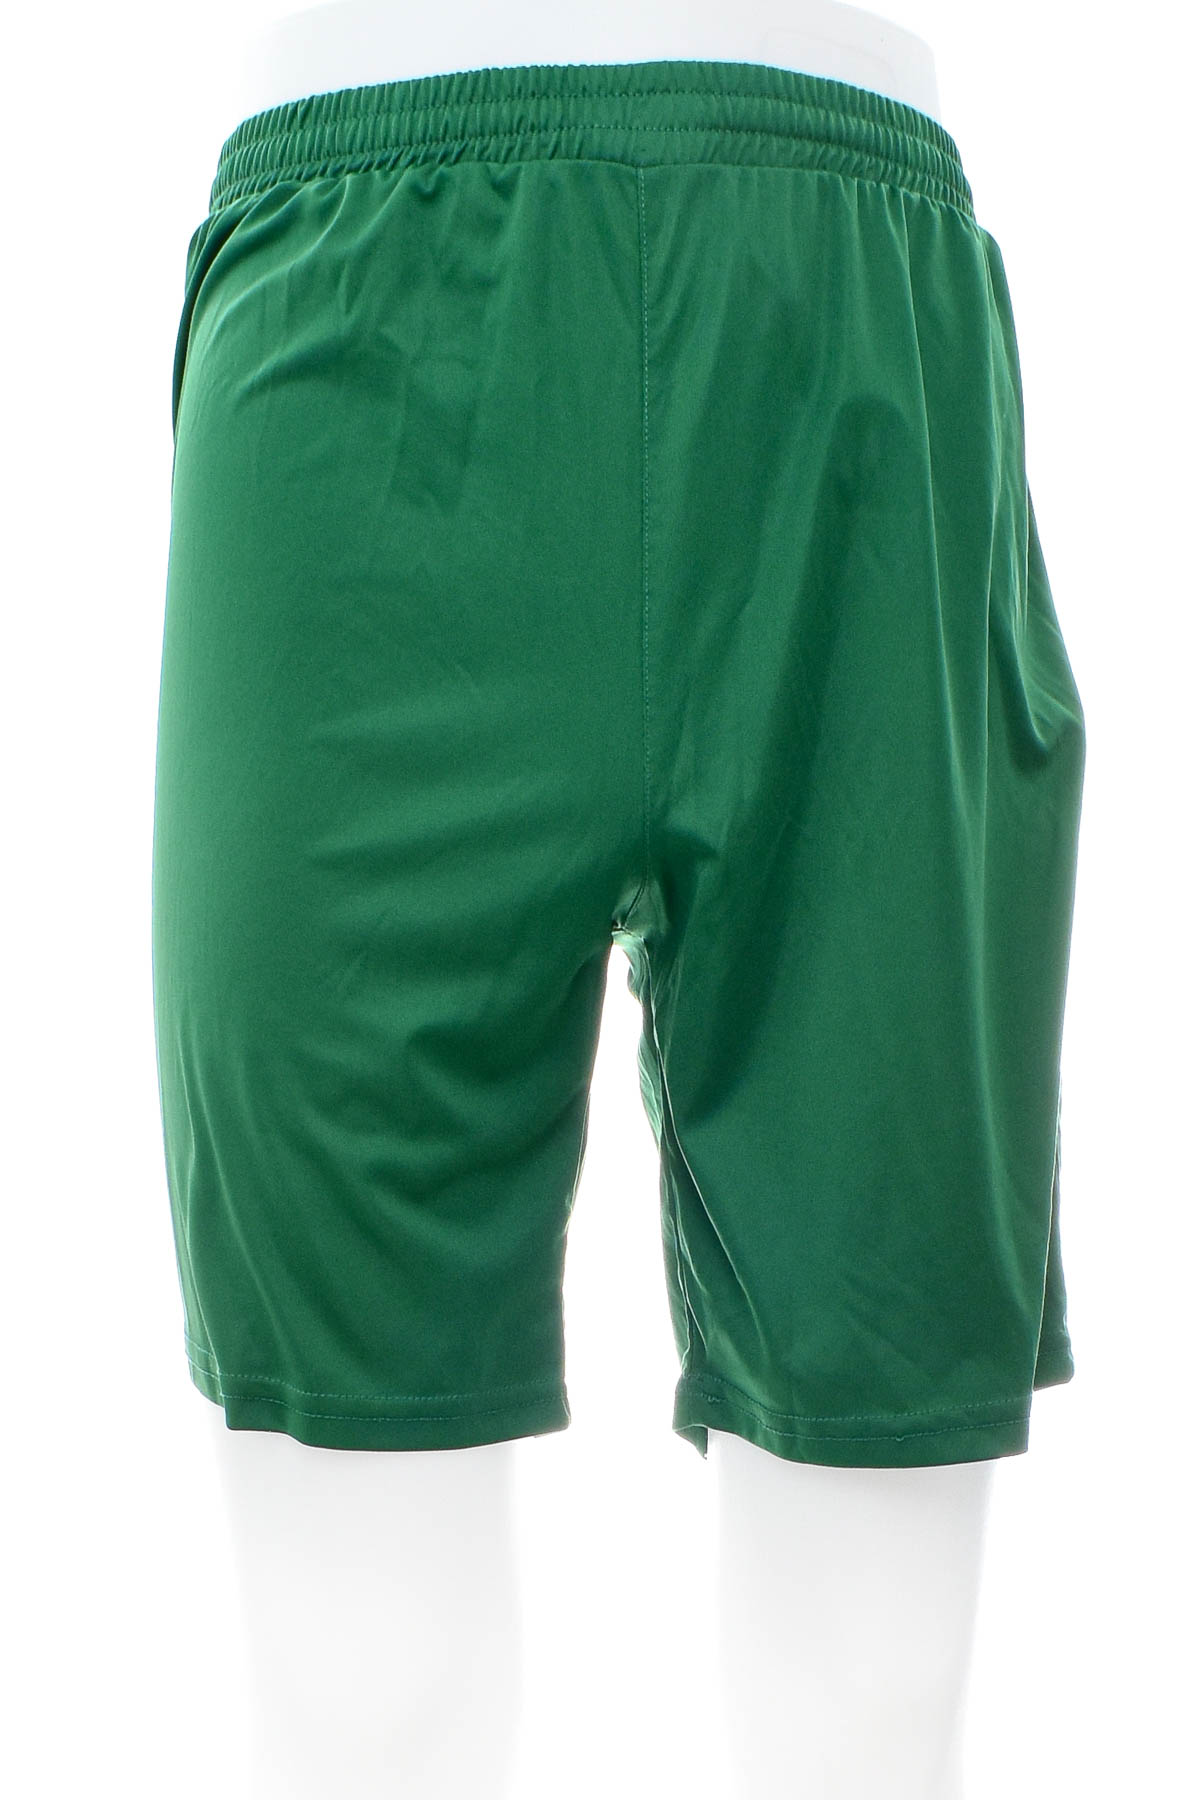 Men's shorts - Joma - 0